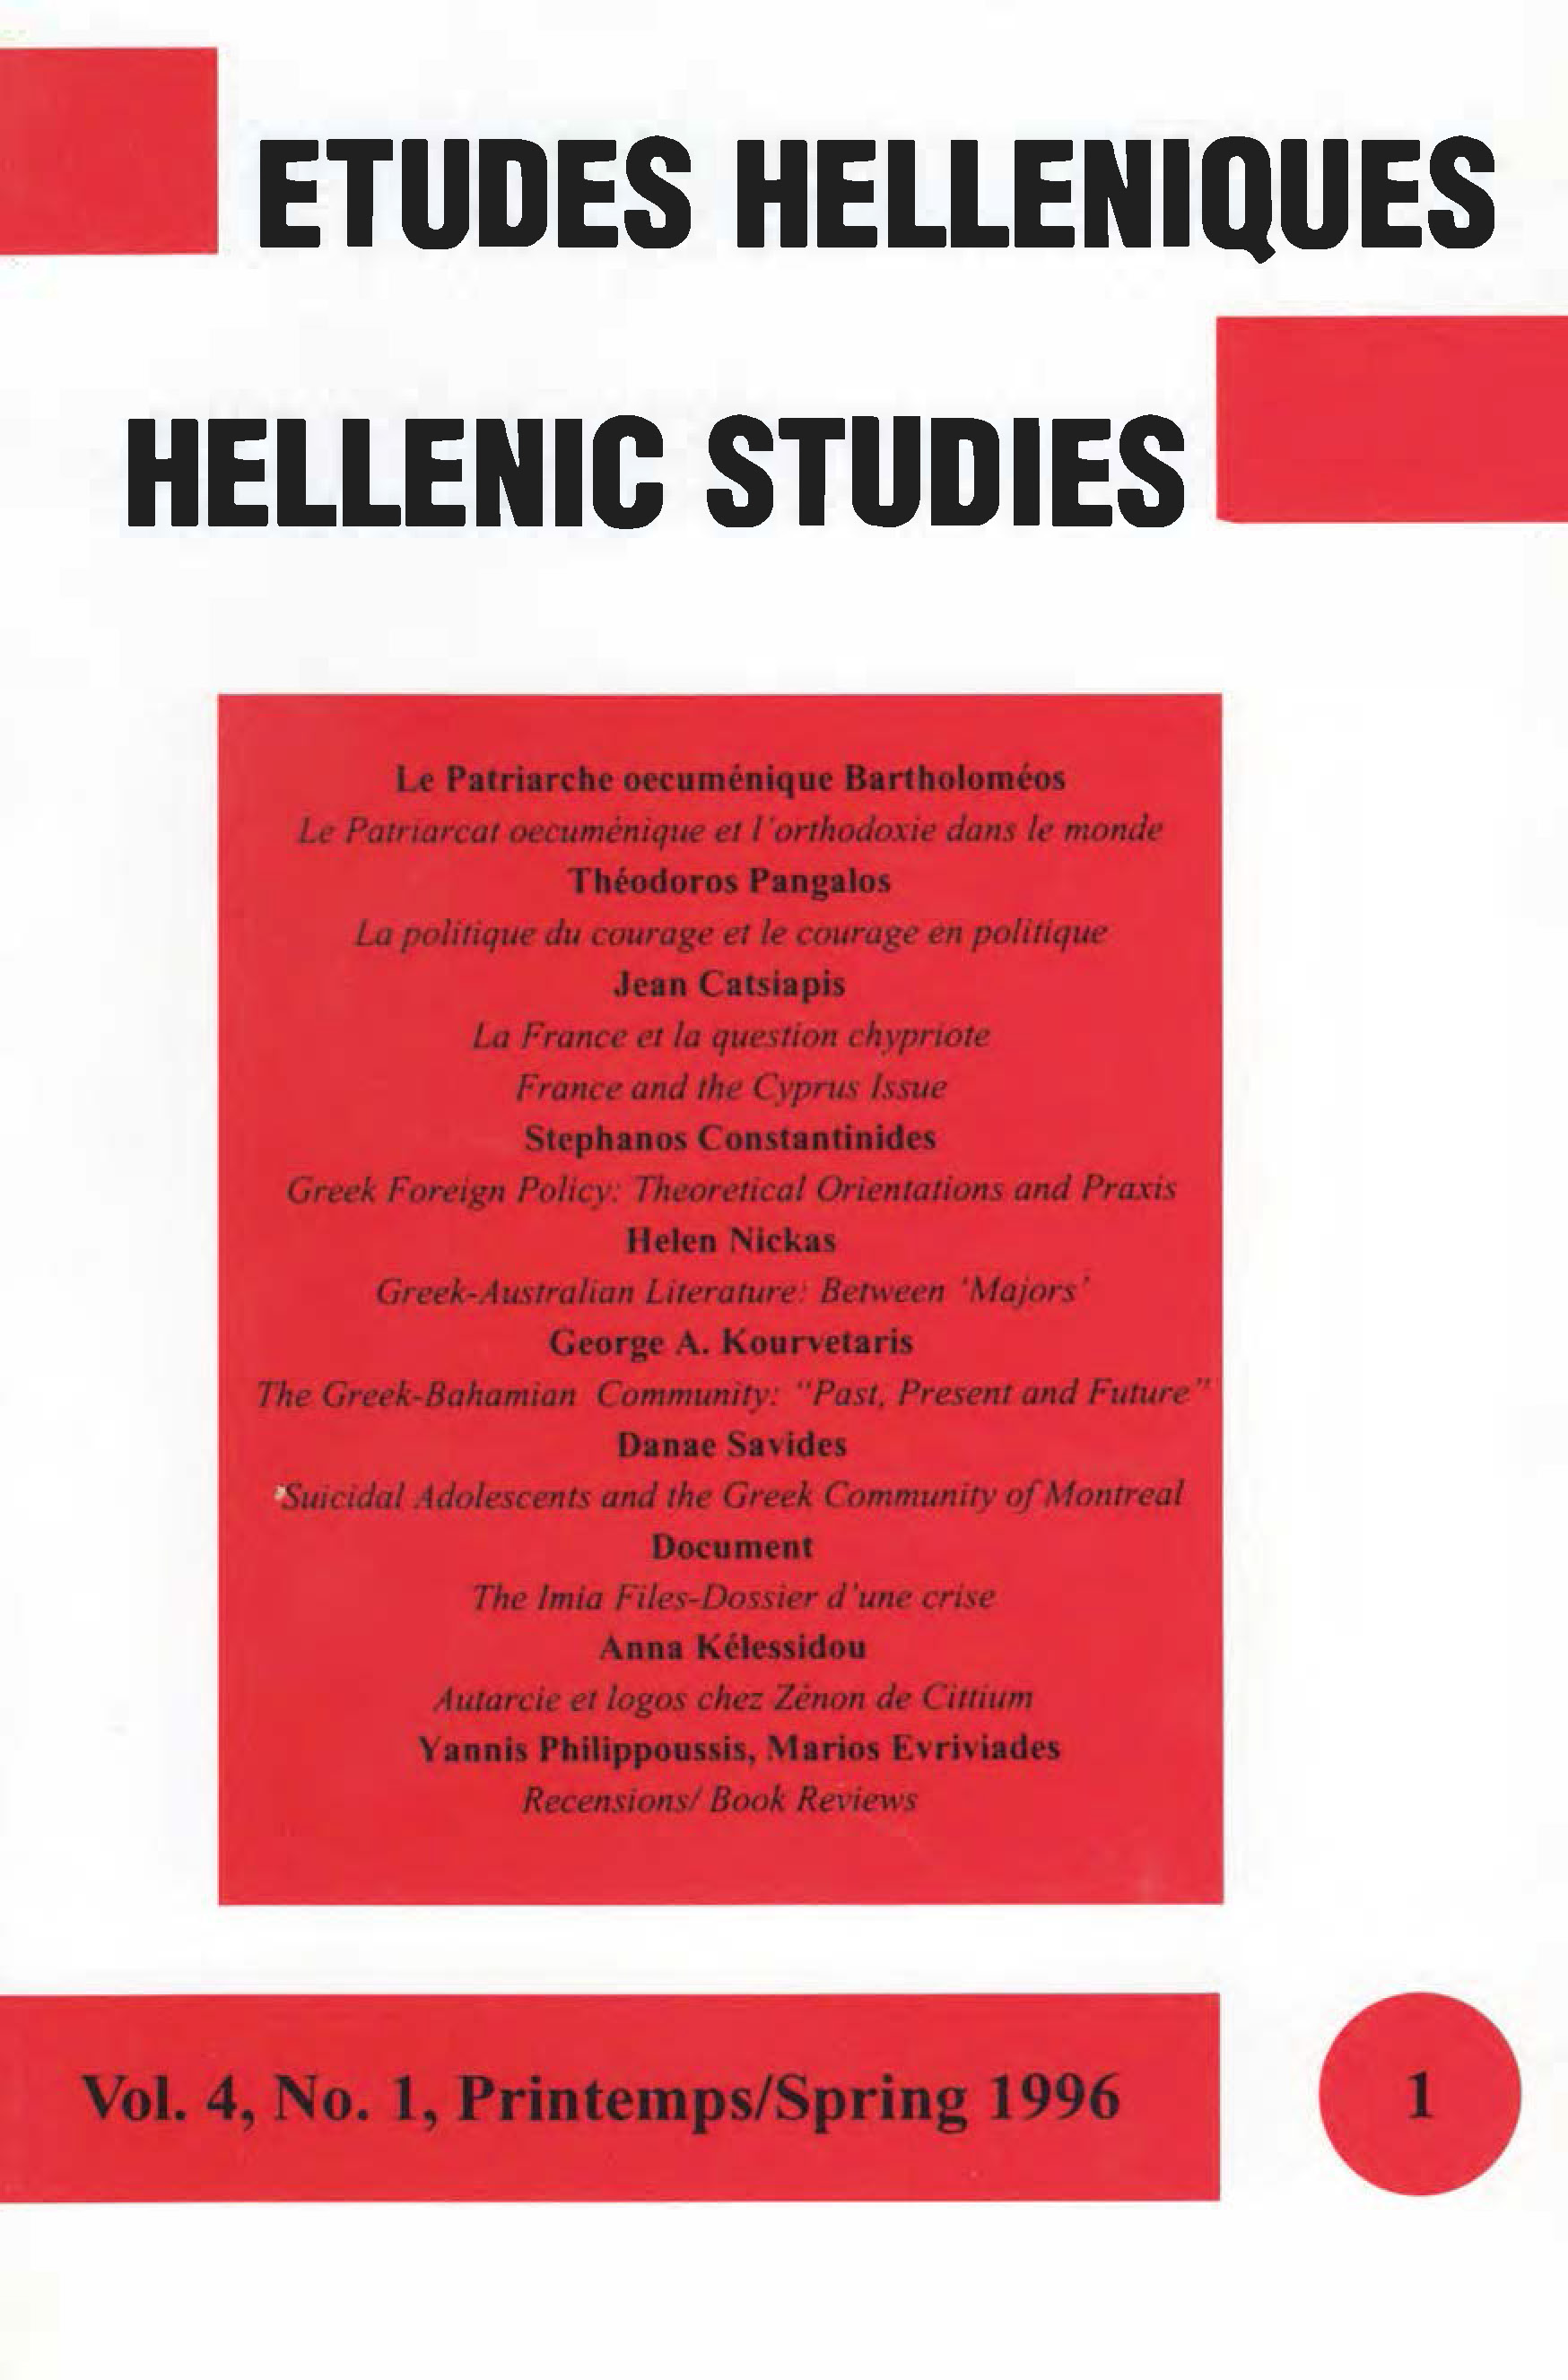 Études helléniques / Hellenic Studies, Volume 4, No 1, 1996, cover